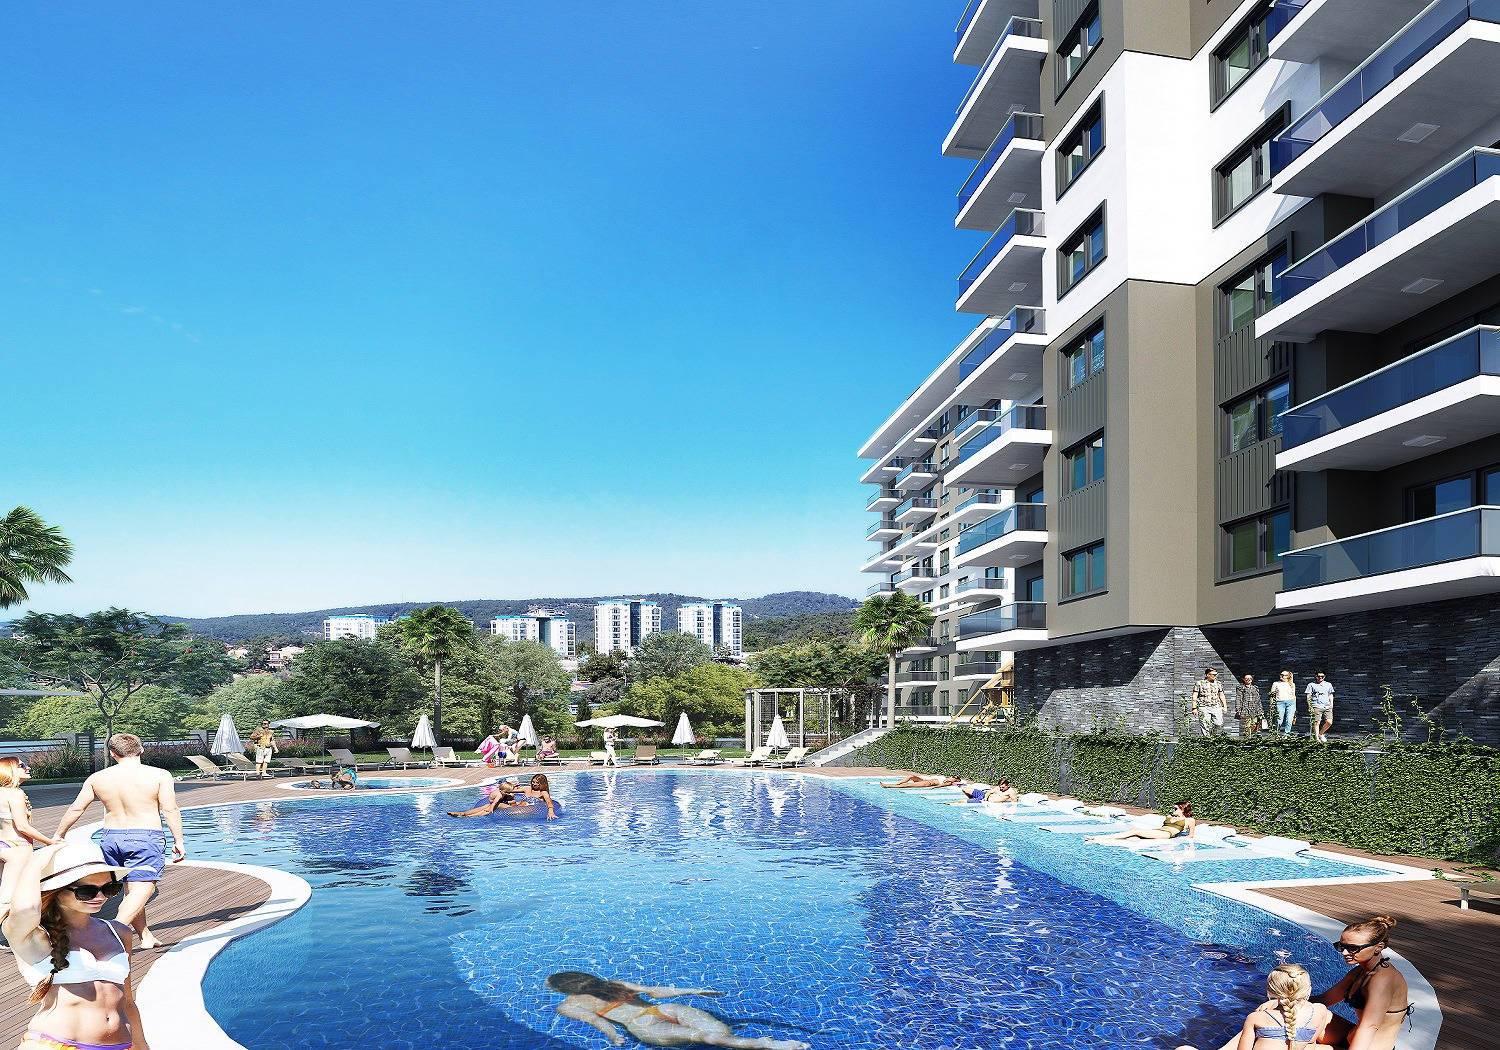 Nowe mieszkania na sprzedaż w Turcji Avsallar, w niskiej cenie